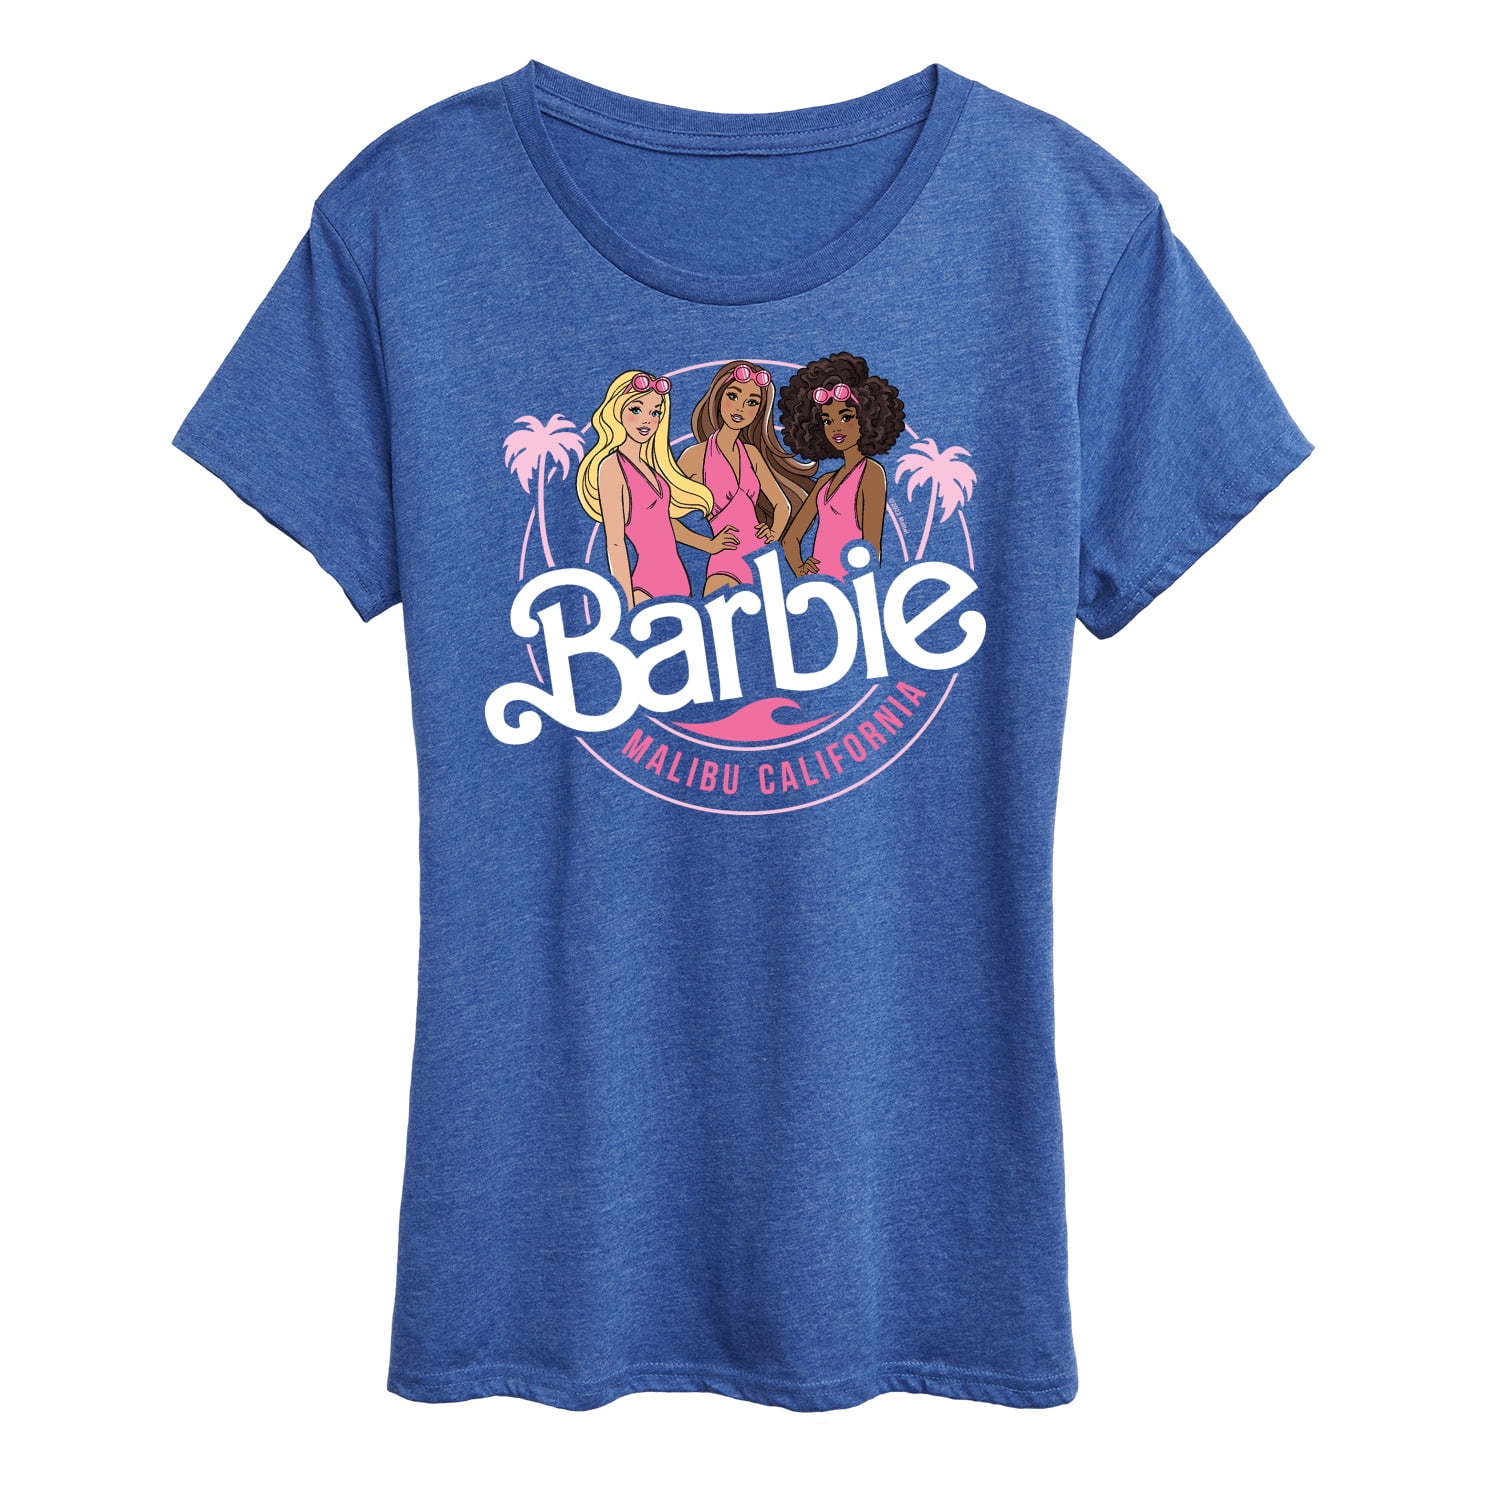 Barbie - Malibu California - Girl Gang - Women's Short Sleeve Graphic  T-Shirt